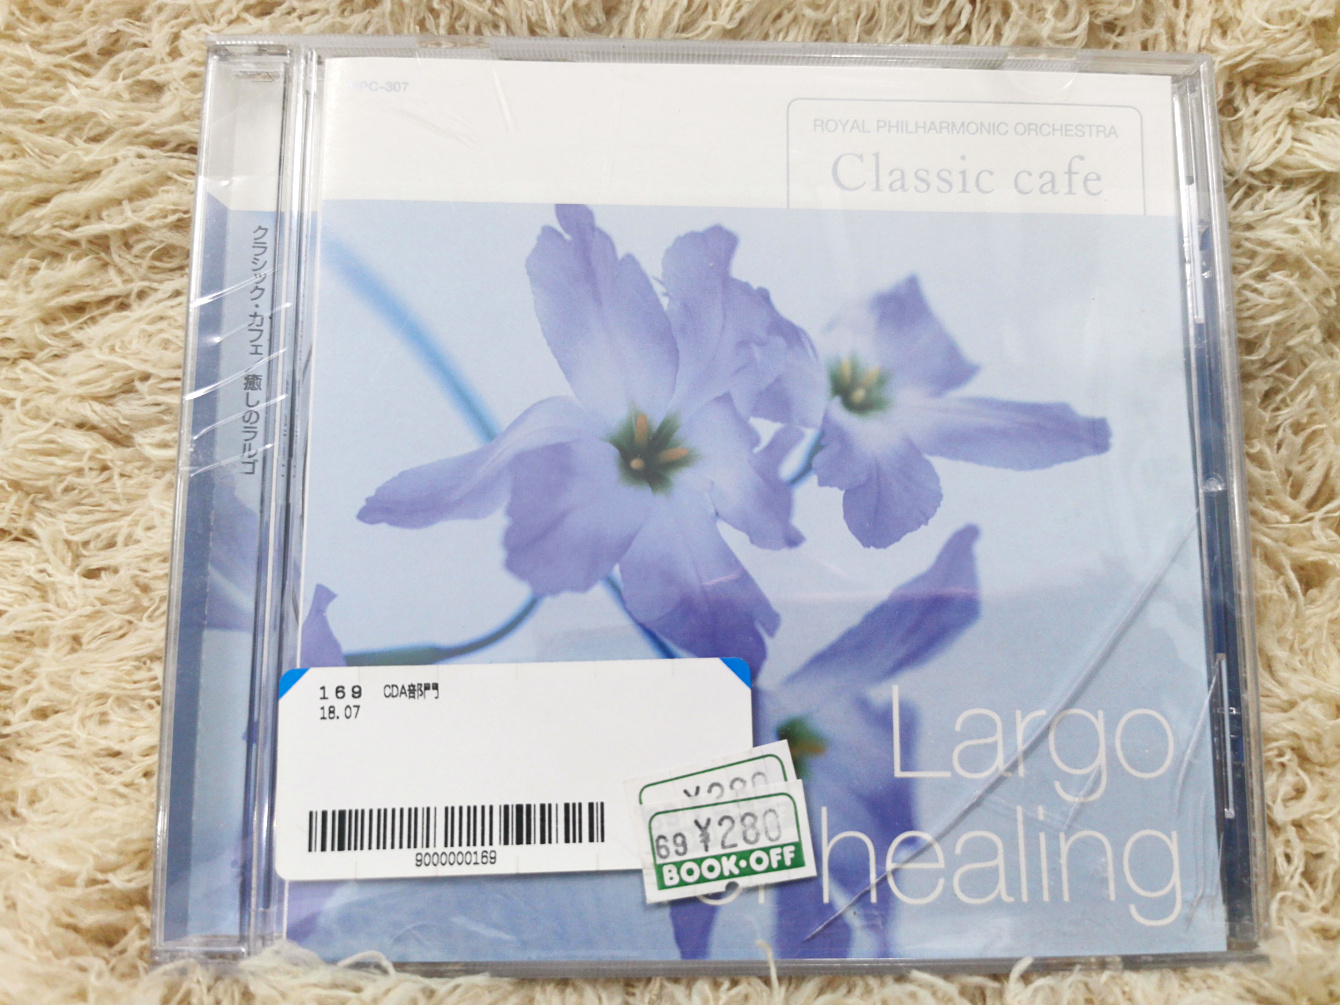 annilove CD music ซีดีเพลง แผ่นเพลง Largo for healing CLASSIC CAFE D1031